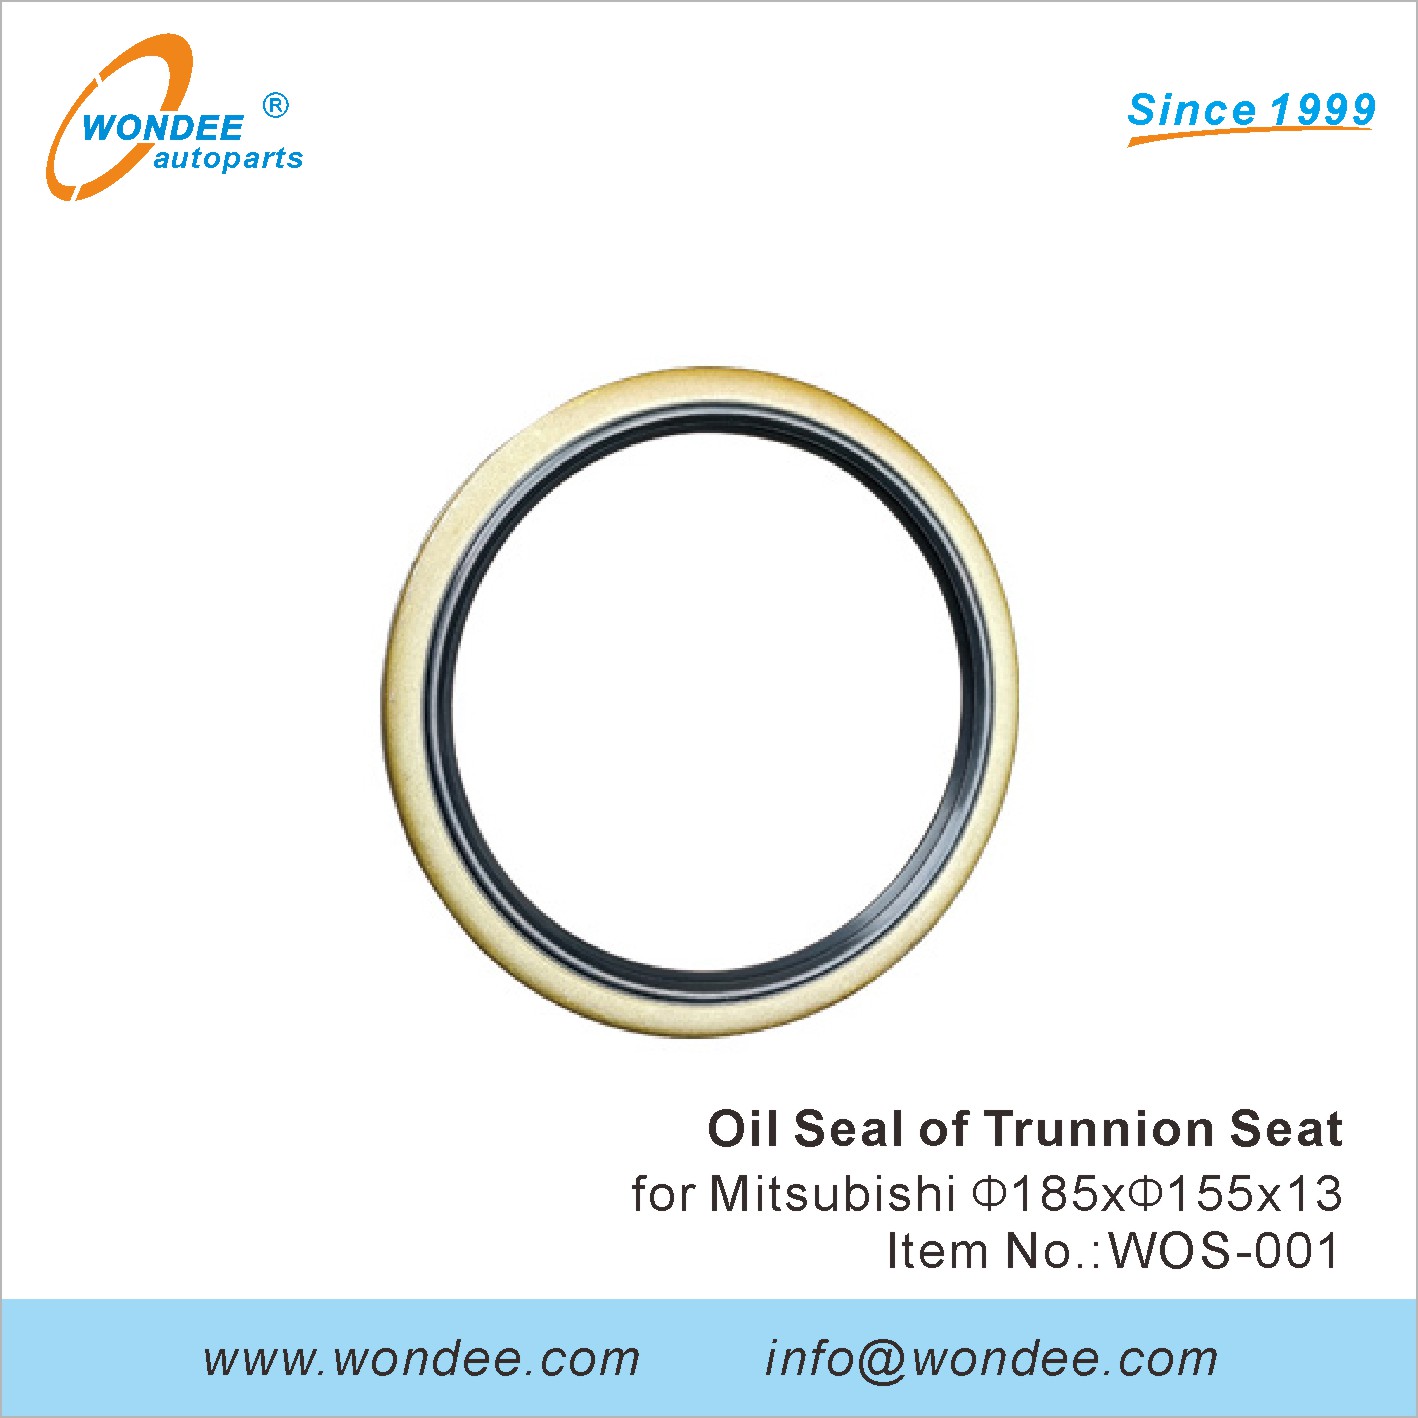 WONDEE oil seal of trunnion seat (1)